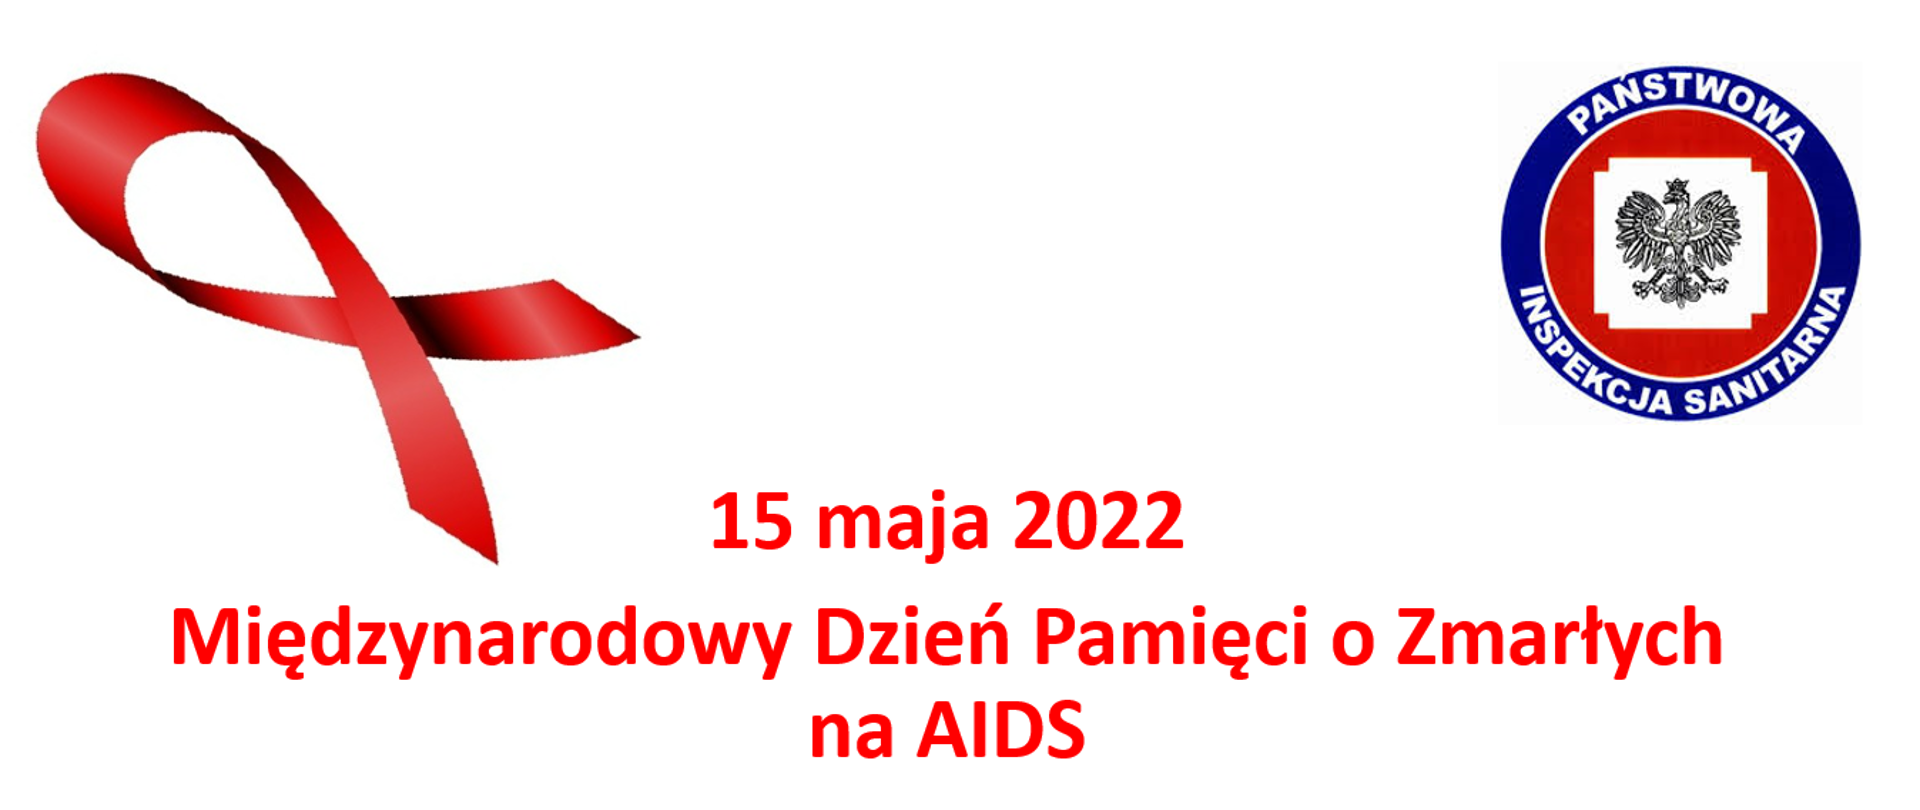 Międzynarodowy Dzień pamięci o Zmarłych na AIDS